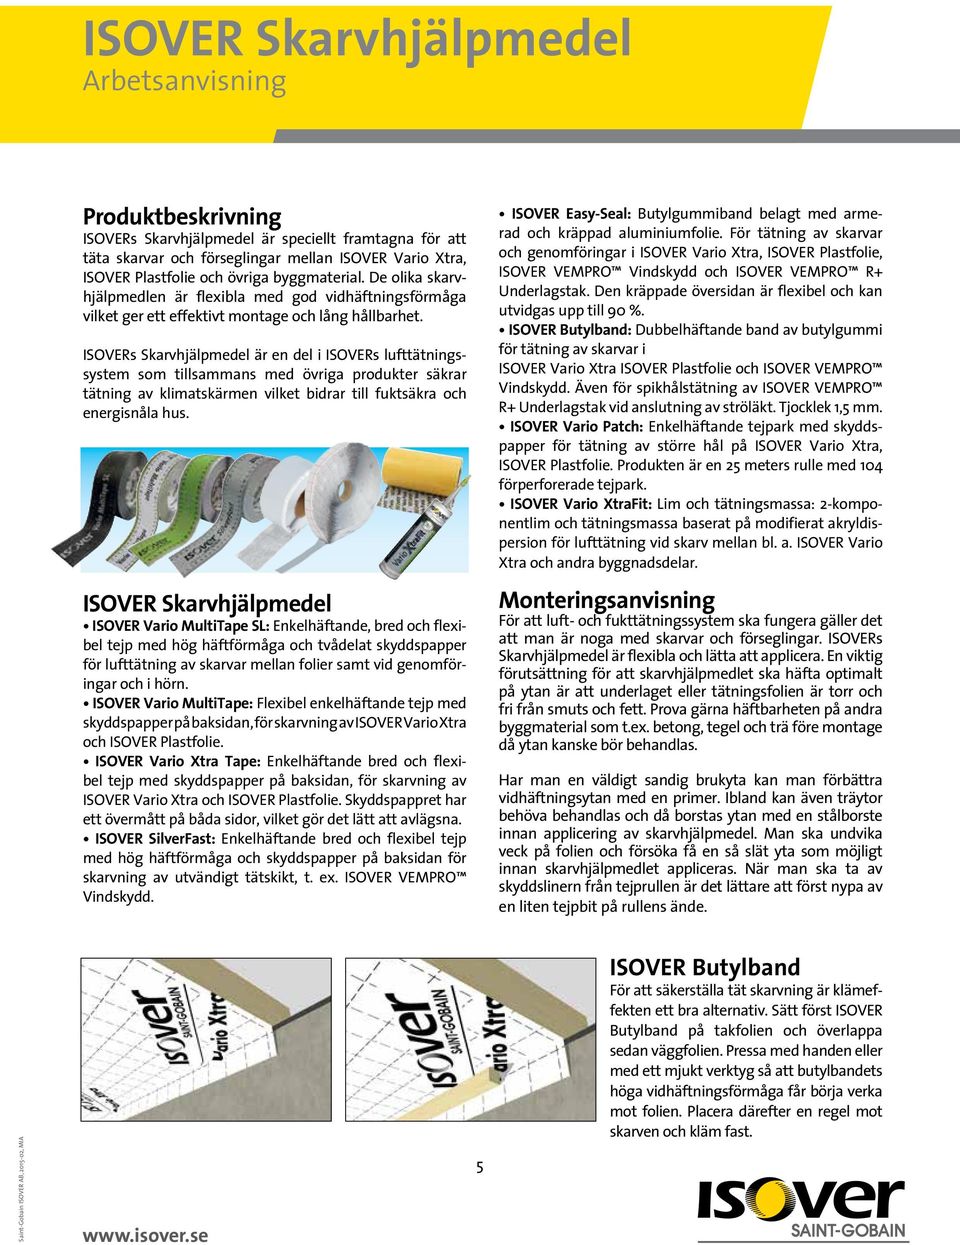 ISOVERs Skarvhjälpmedel är en del i ISOVERs lufttätningssystem som tillsammans med övriga produkter säkrar tätning av kli matskärmen vilket bidrar till fuktsäkra och energisnåla hus.